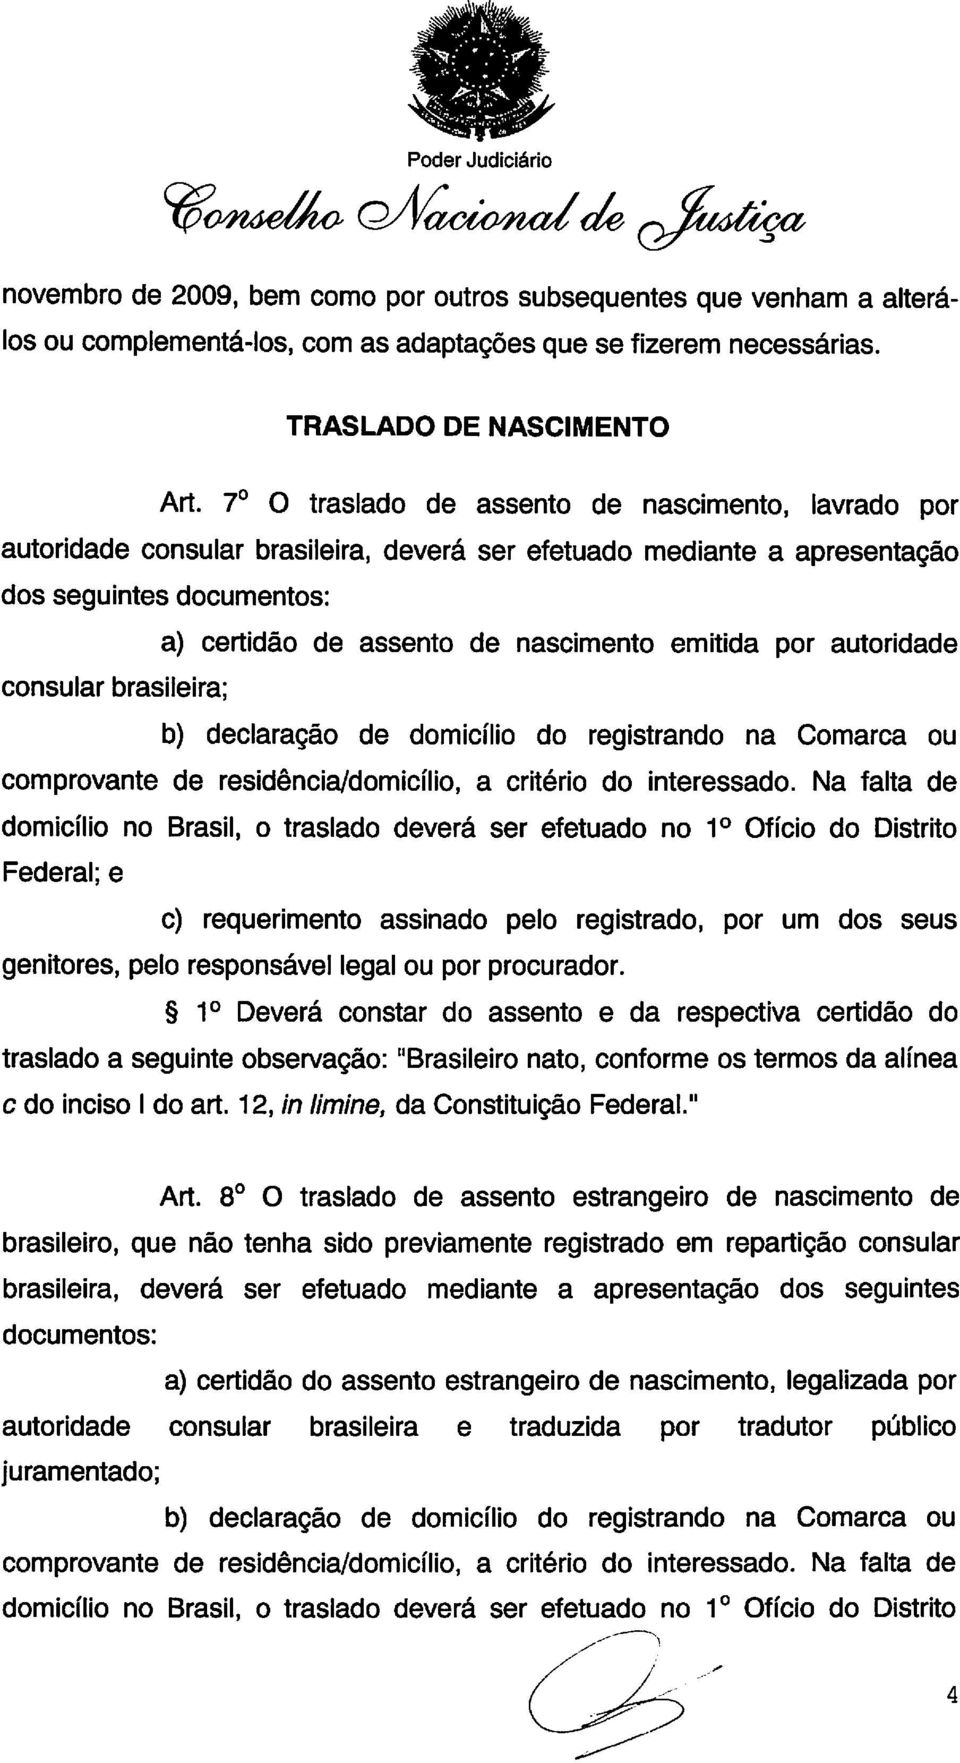 7o O traslado de assento de nascimento, lavrado por autoridade consular brasileira, deverá ser efetuado mediante a apresentação dos seguintes documentos: a) certidão de assento de nascimento emitida